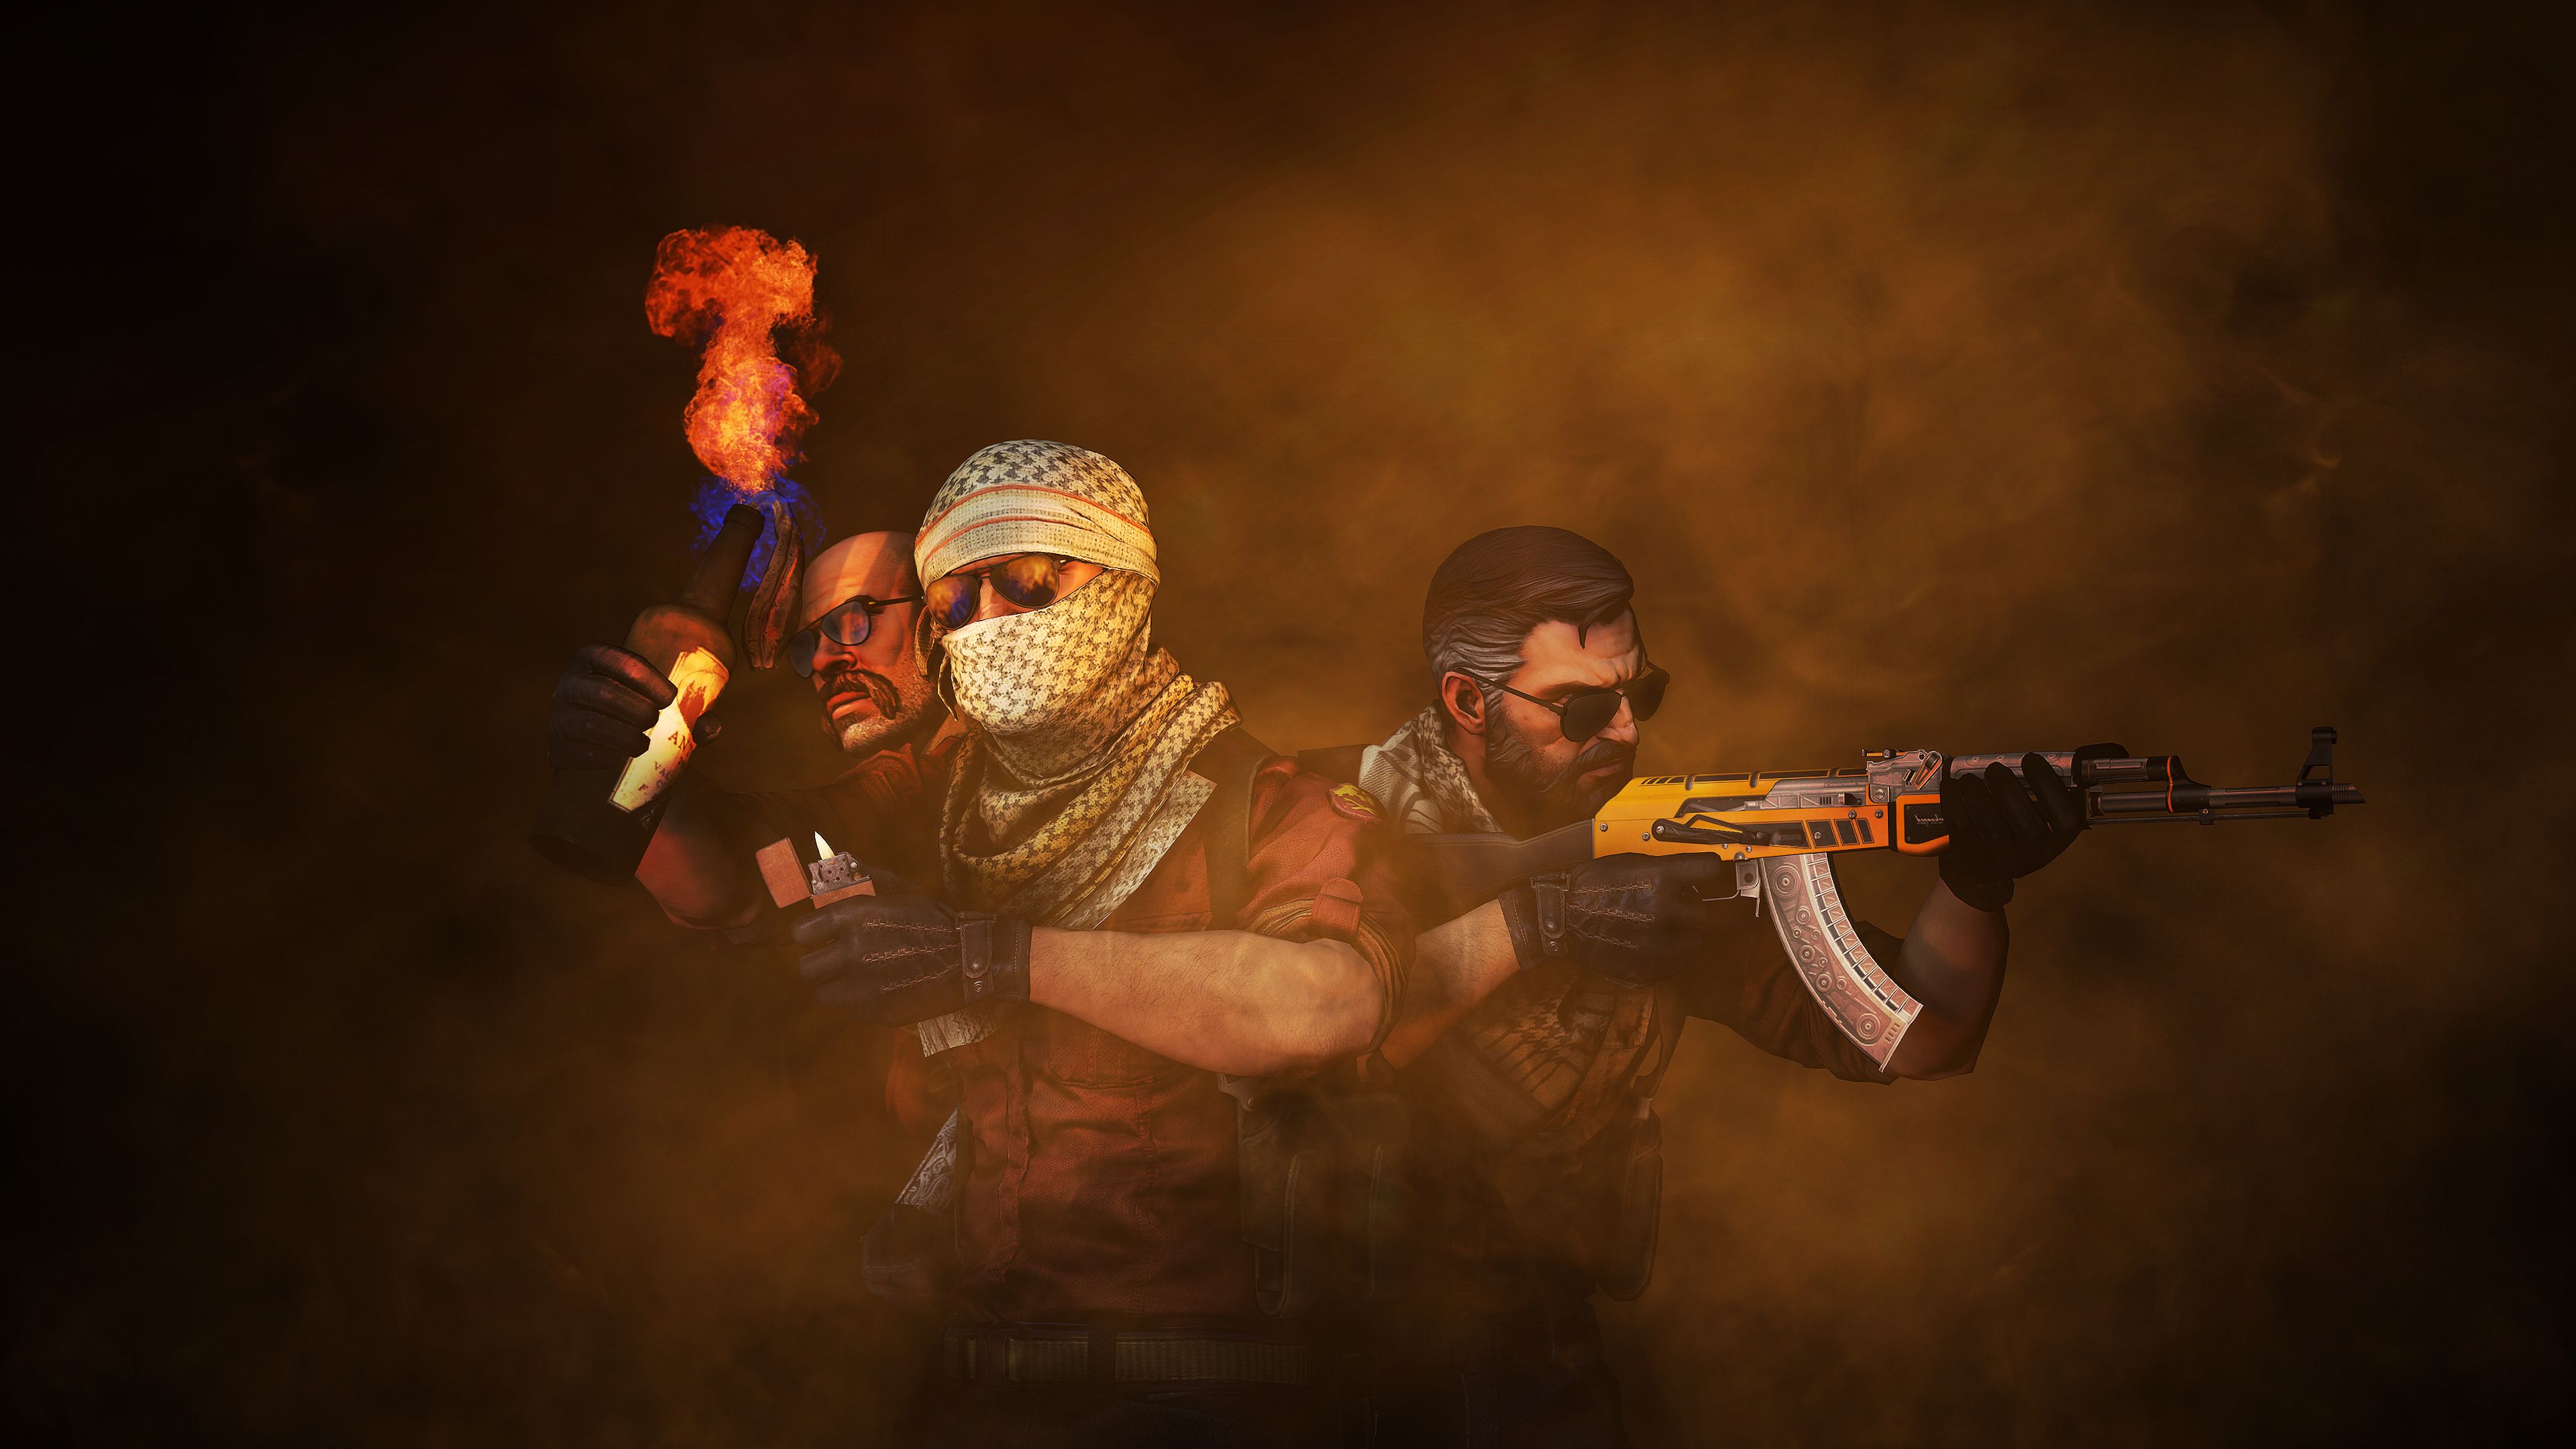 CS GO Terrorist Wallpaper 4K